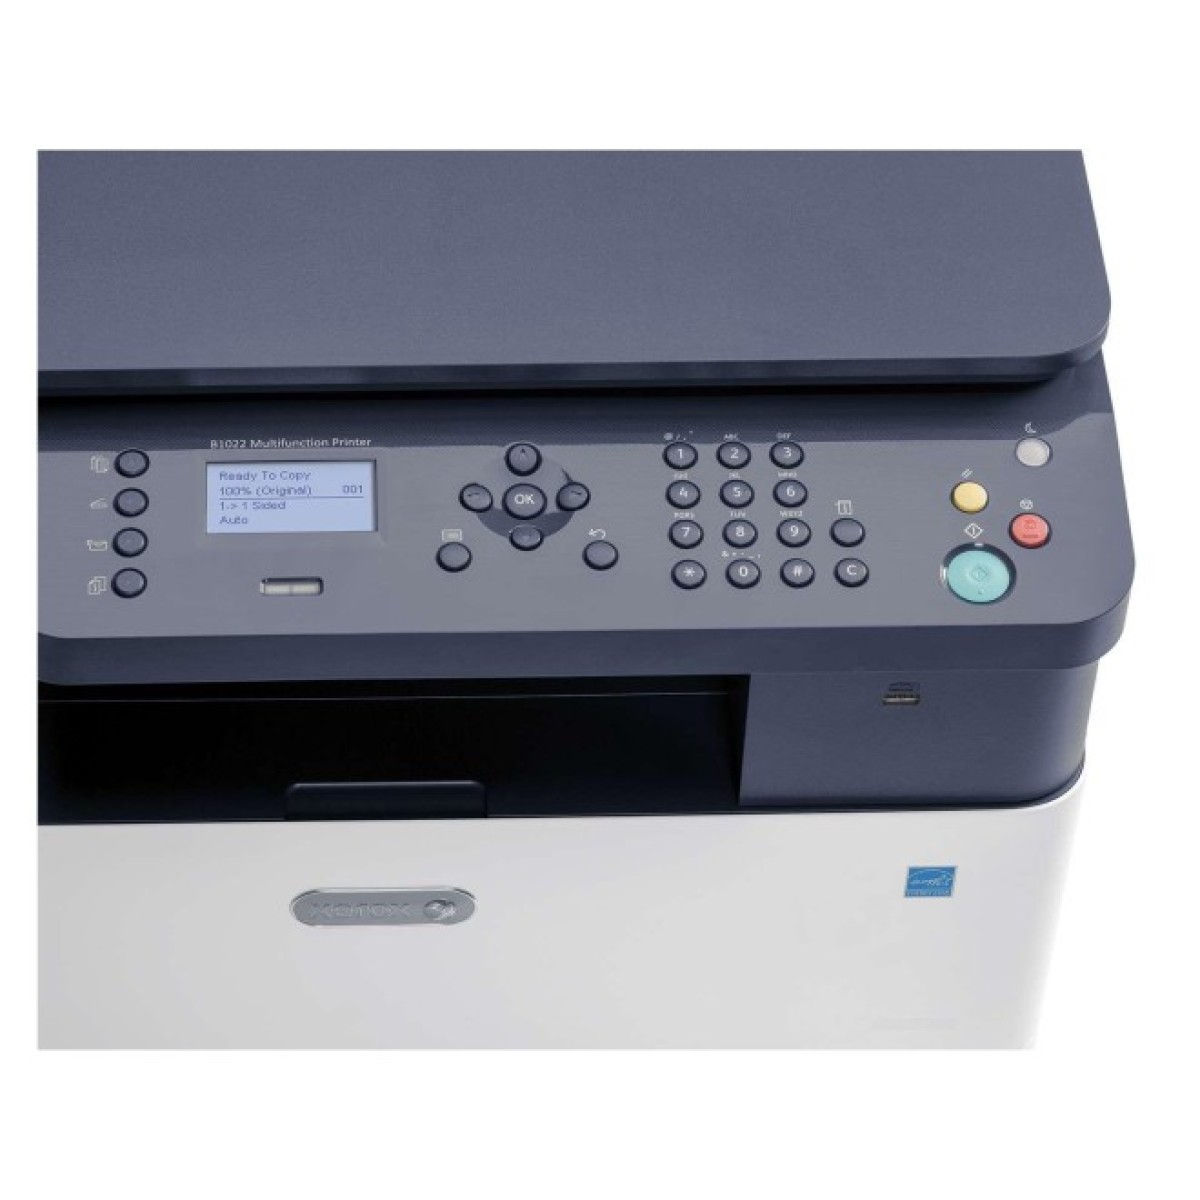 Многофункциональное устройство Xerox B1022 (B1022V_B) 98_98.jpg - фото 2